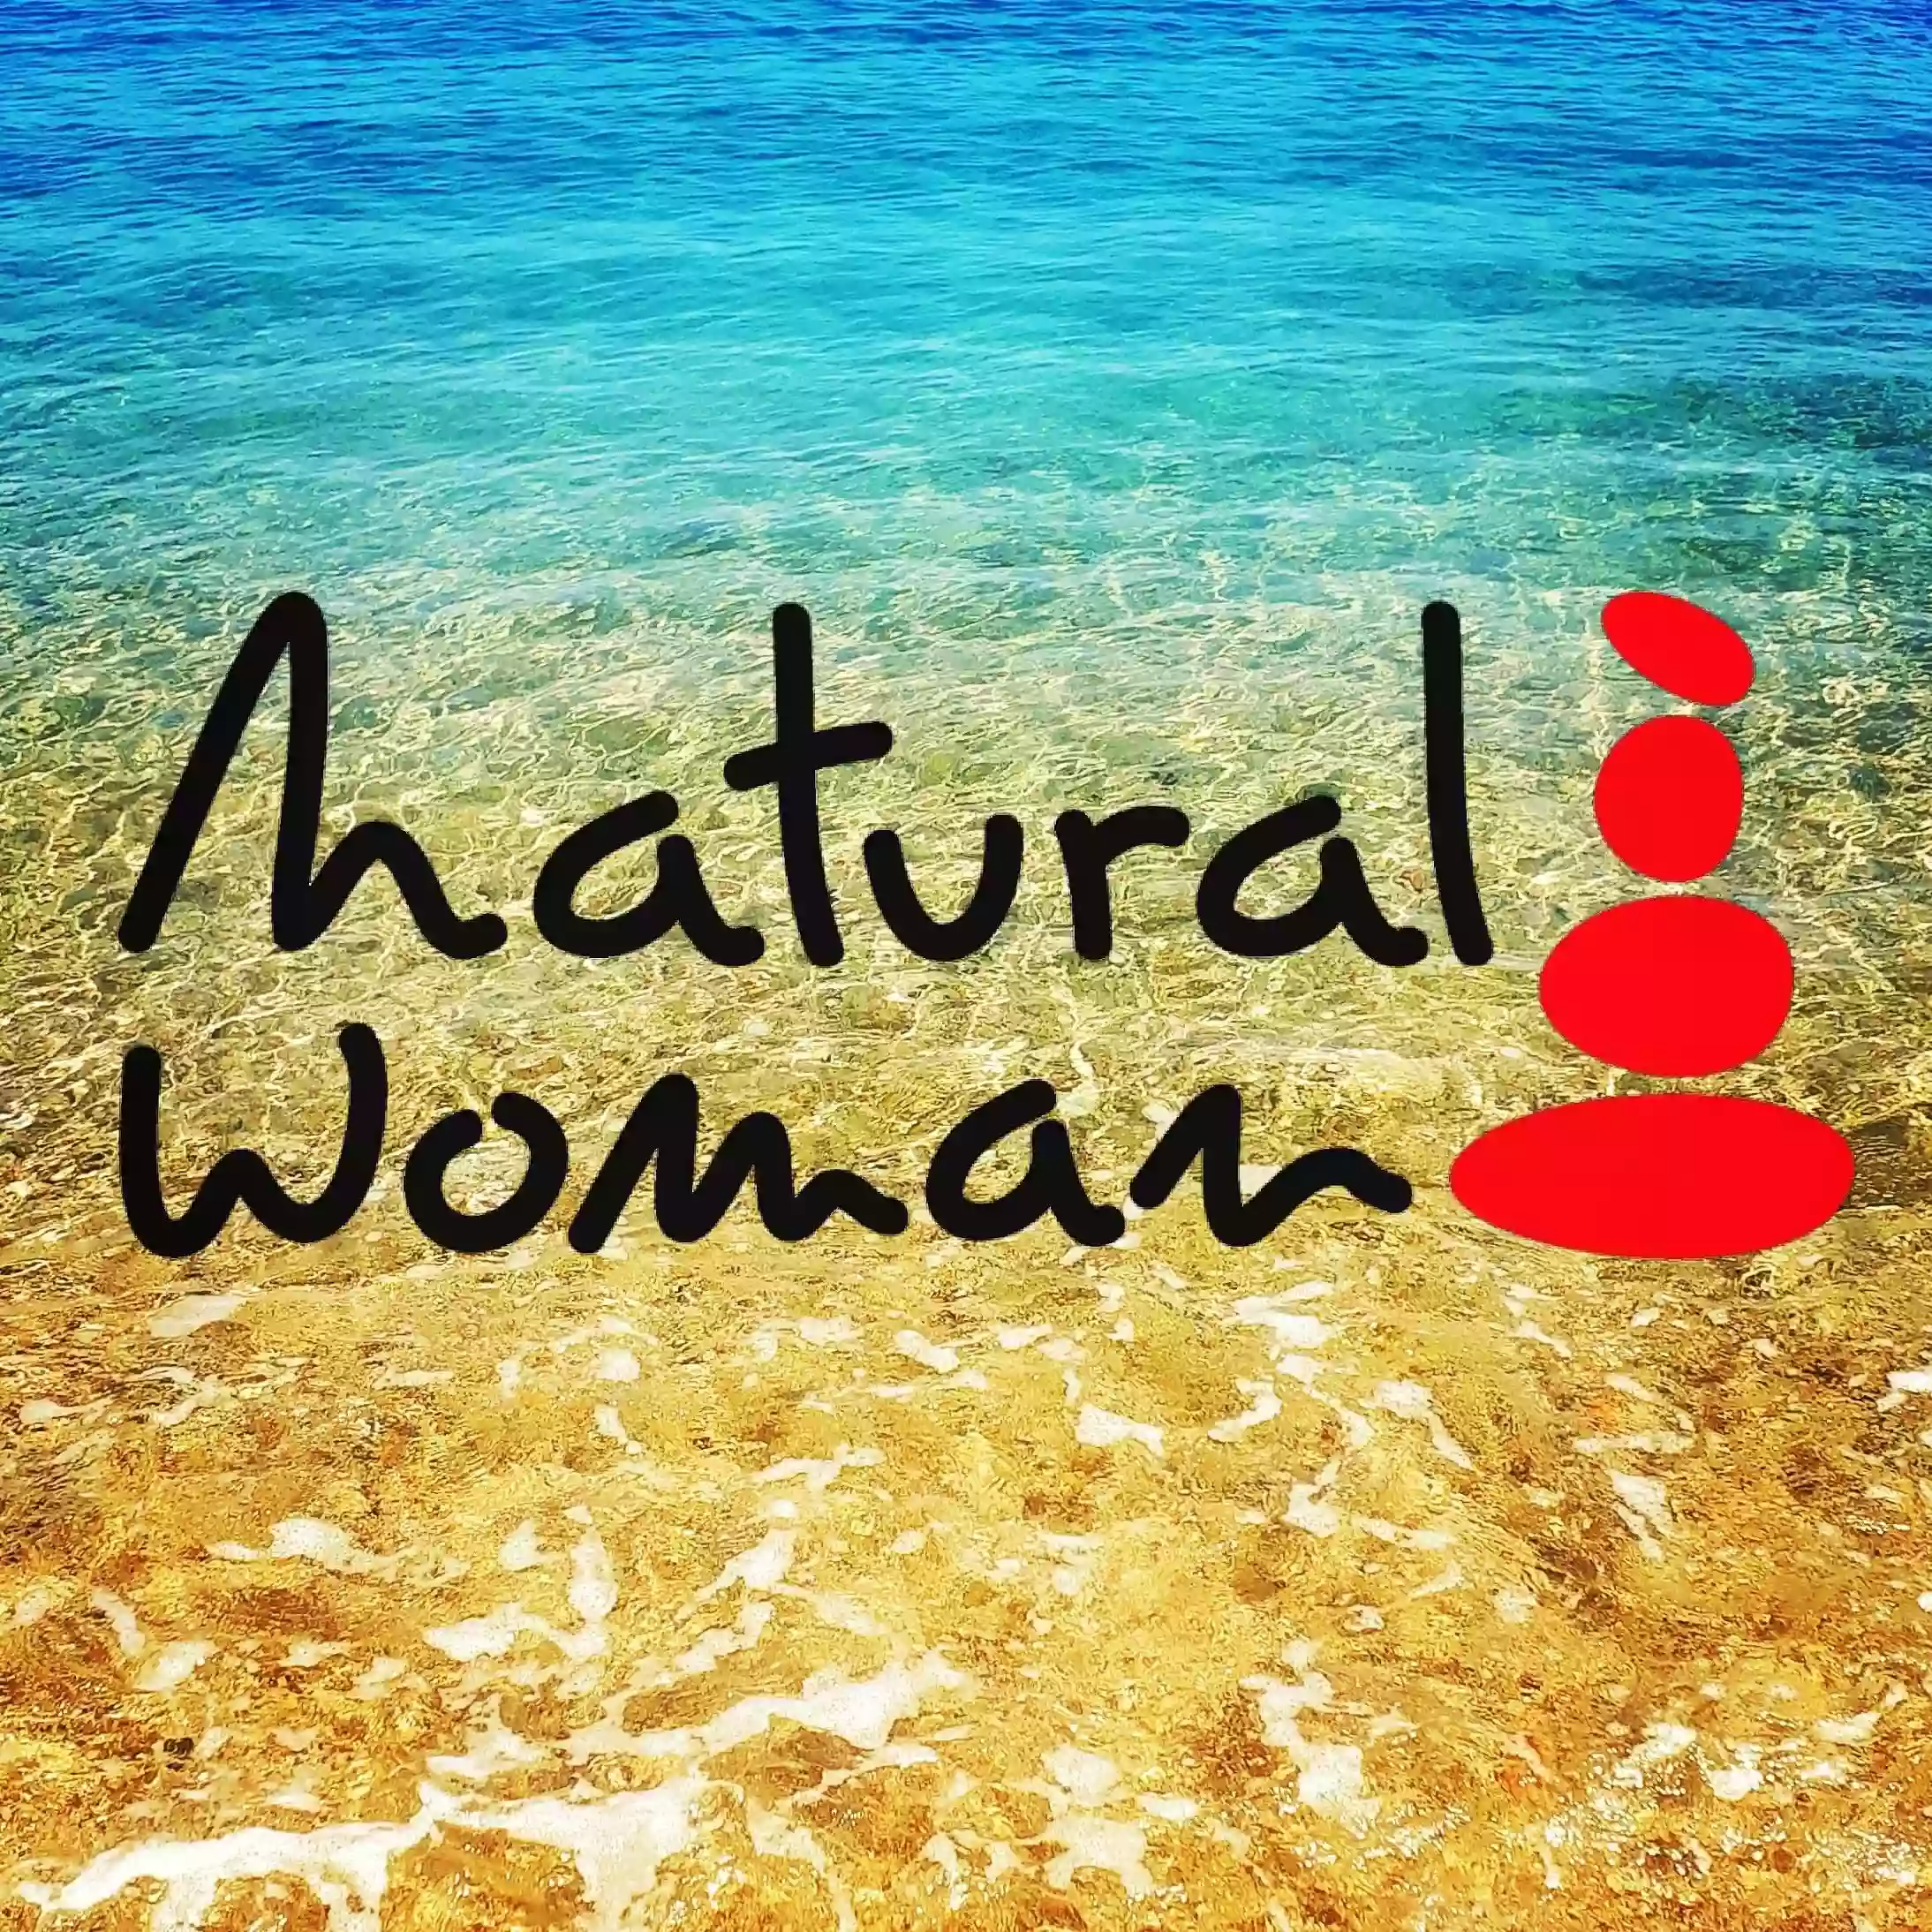 Natural woman